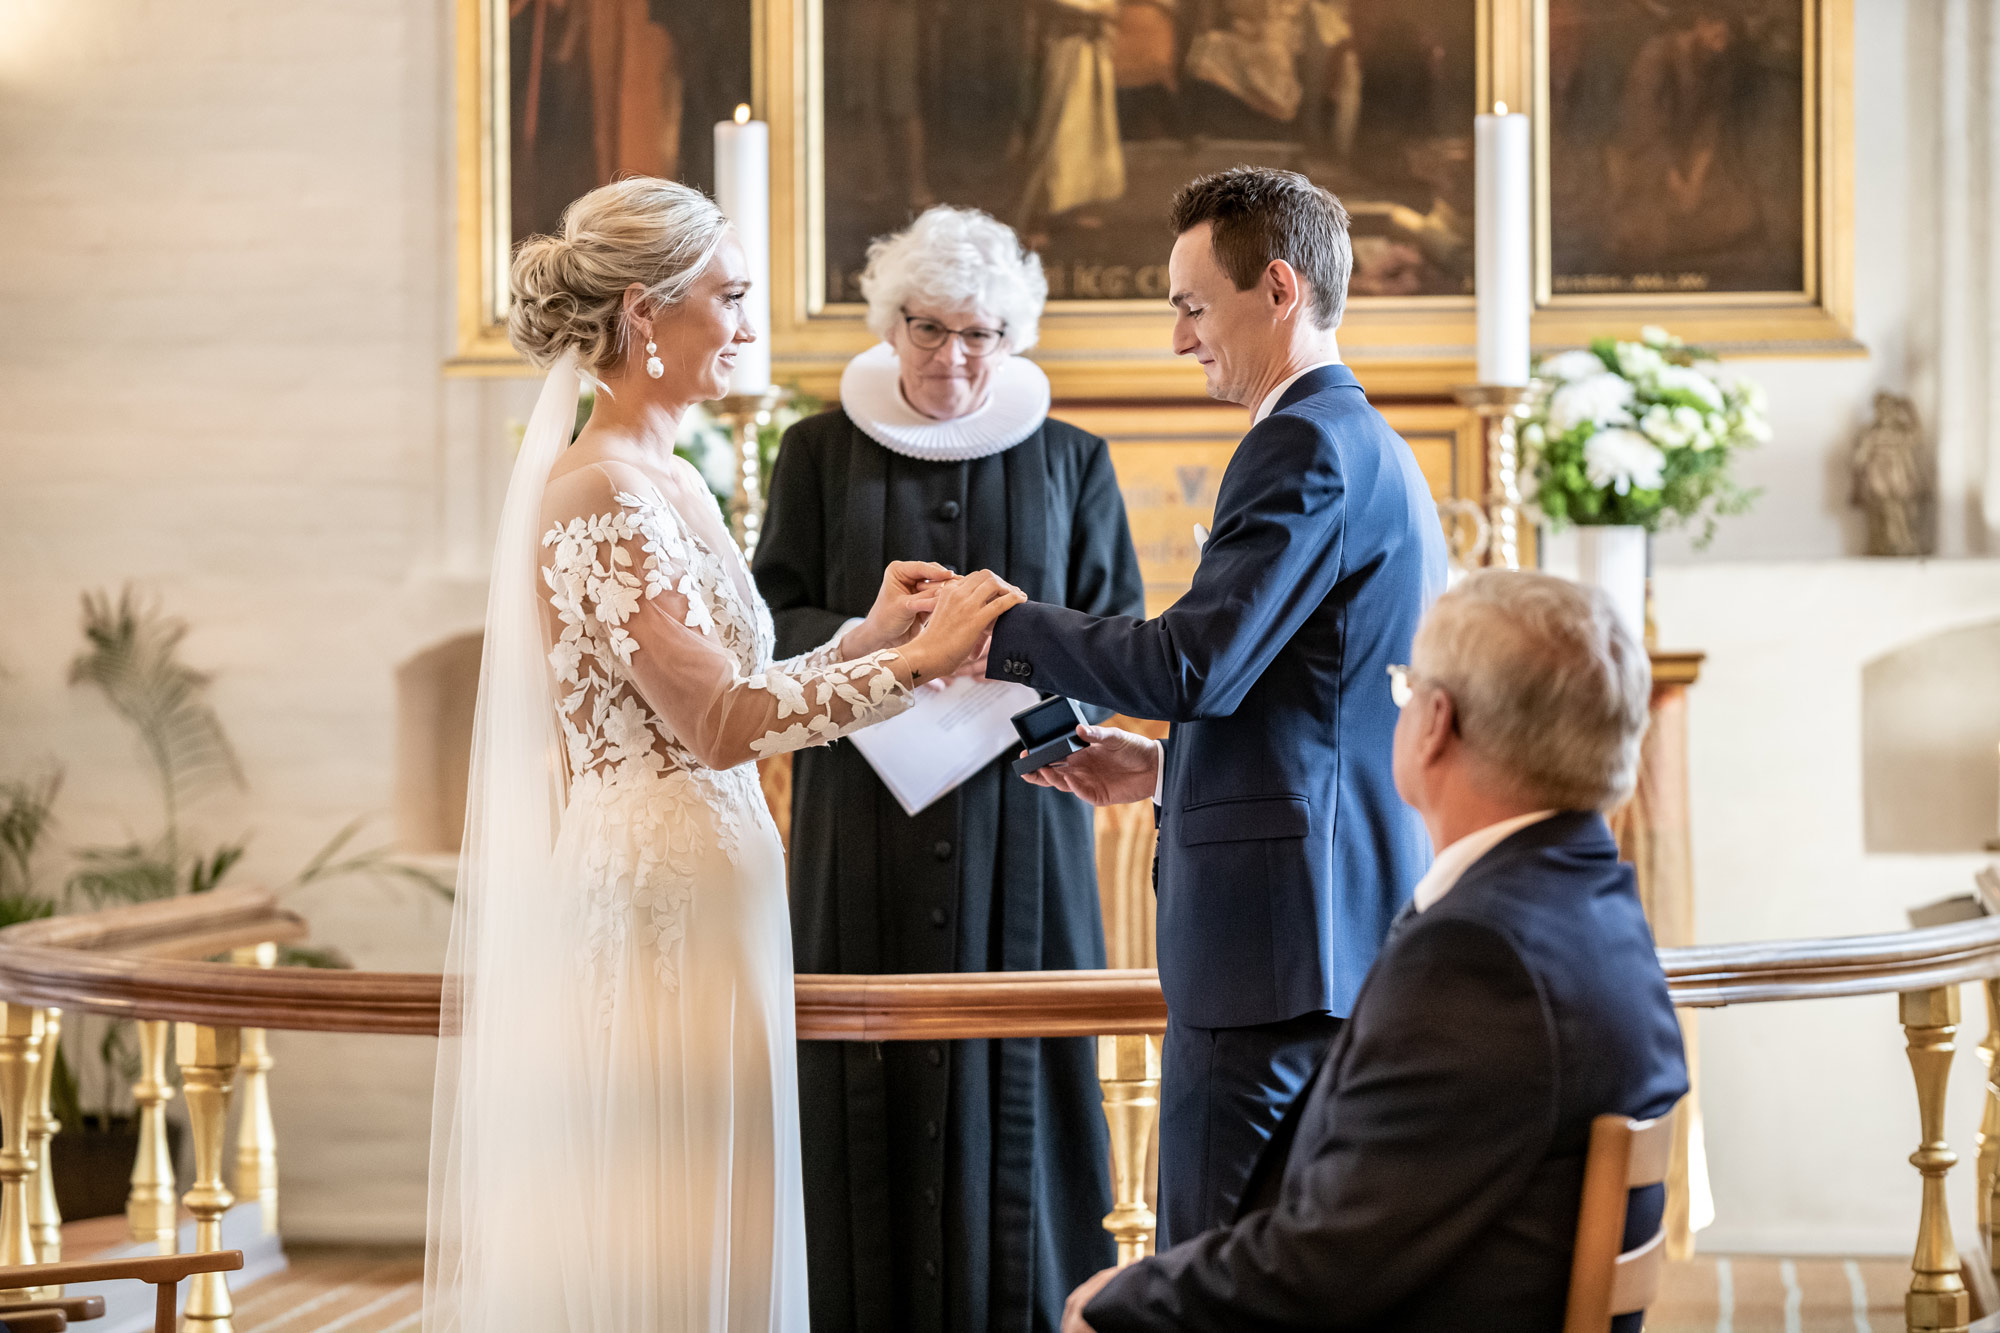 Bryllupsbilleder på Amalienborg Slotsplads i København